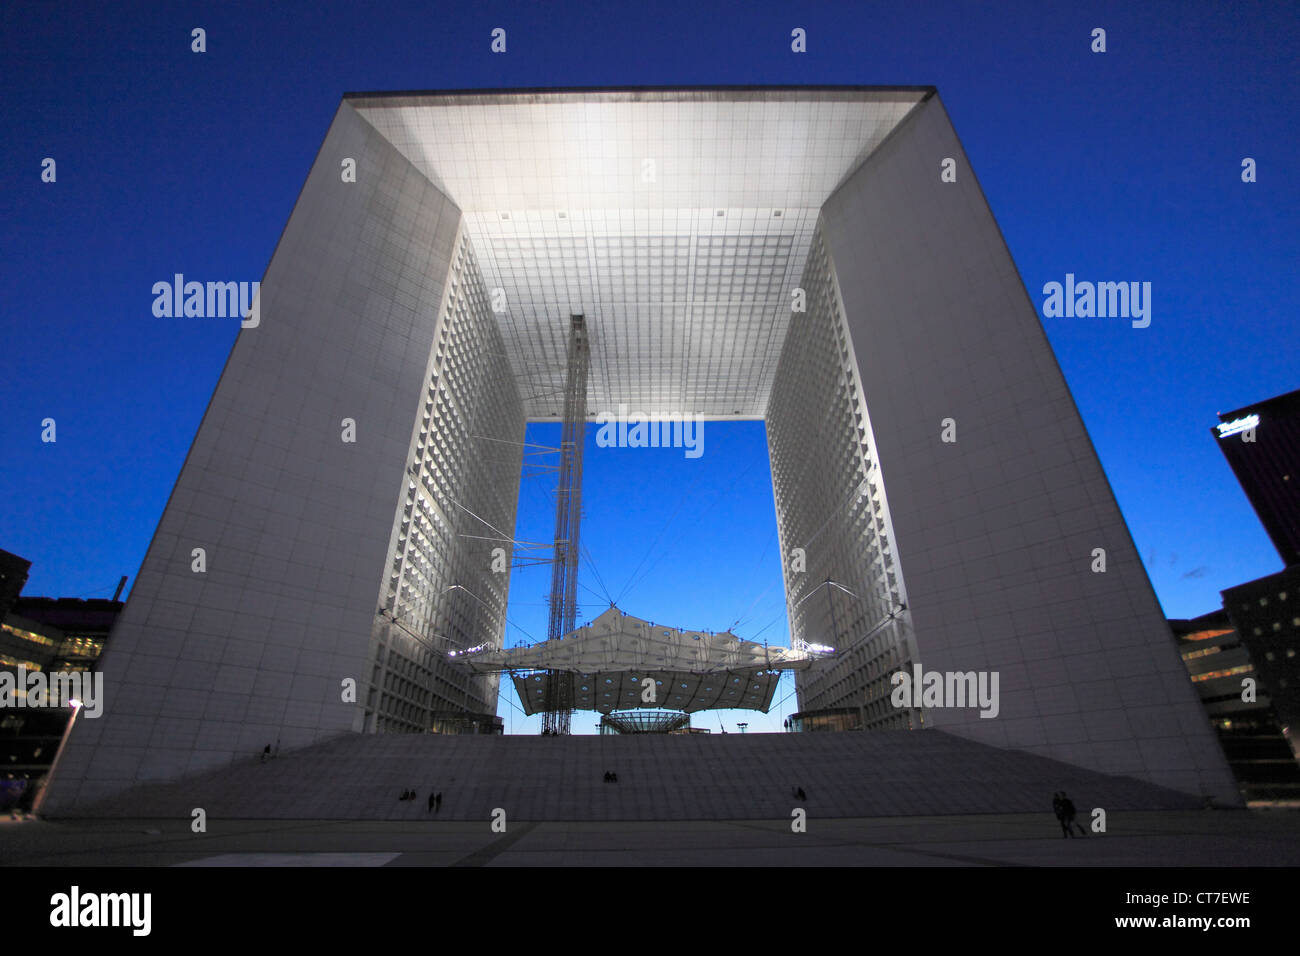 France, Paris, La Défense, Grande Arche, Stock Photo